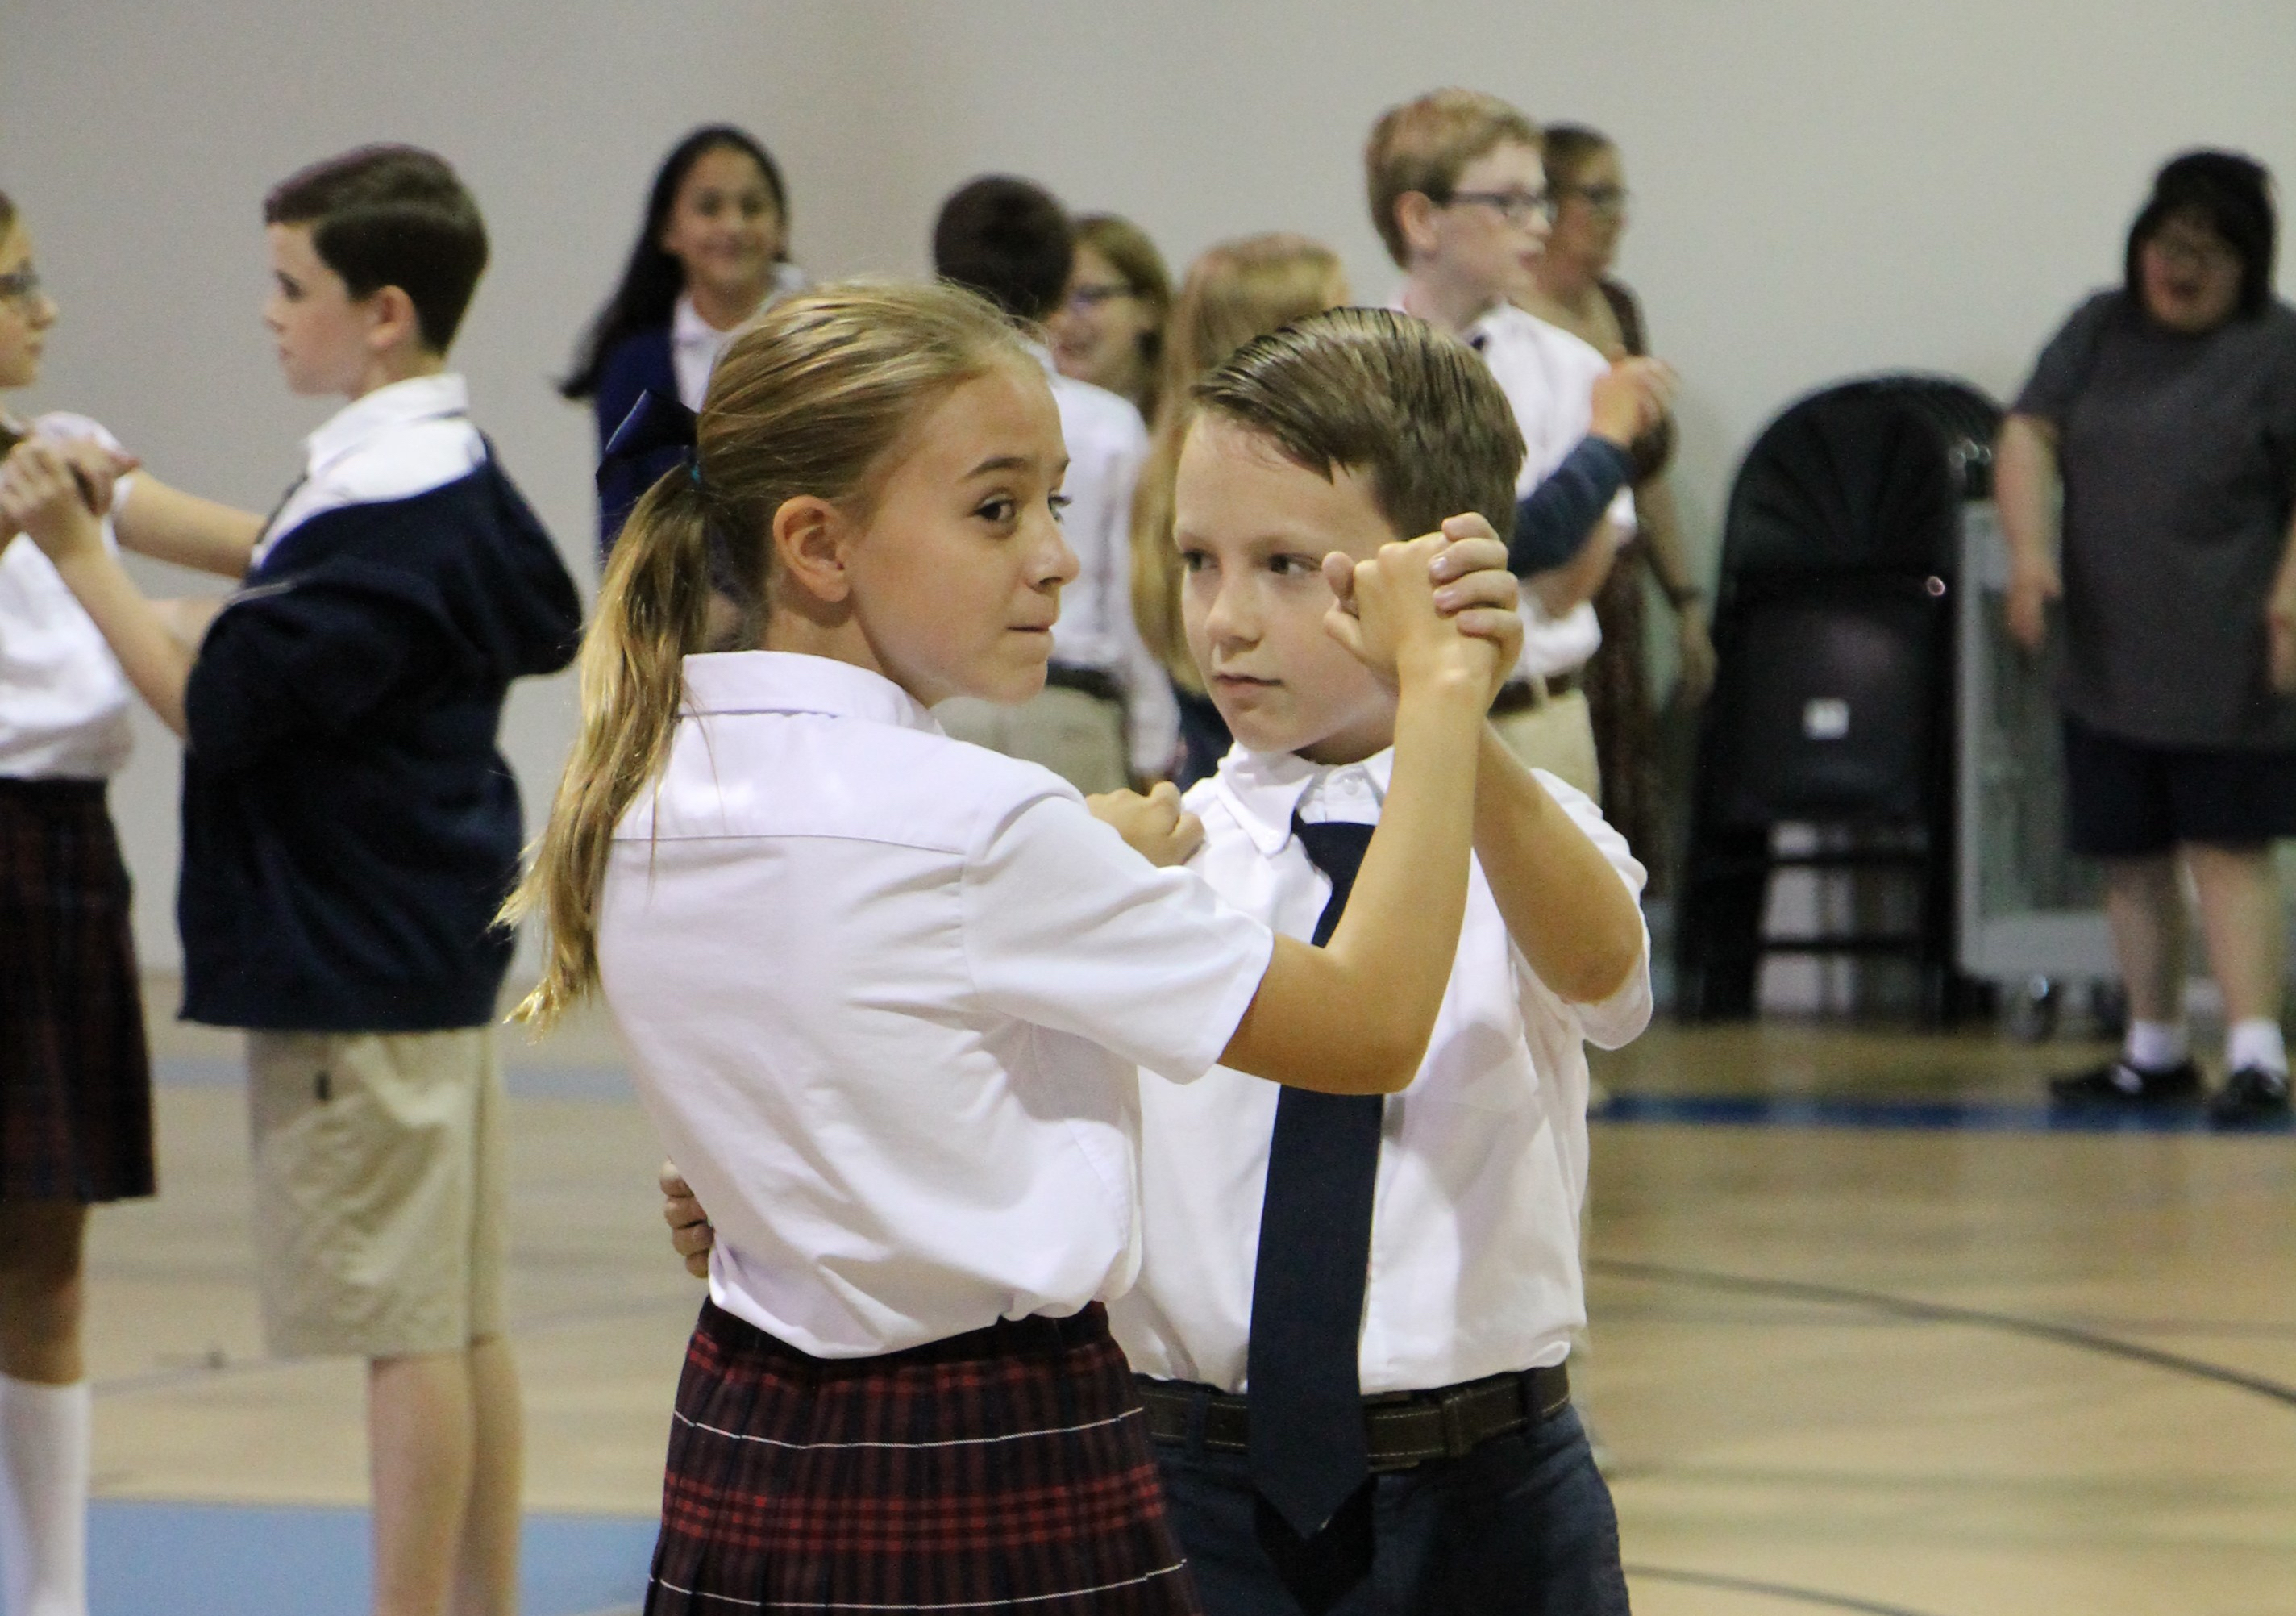 Girl and boy in school uniforms dancing